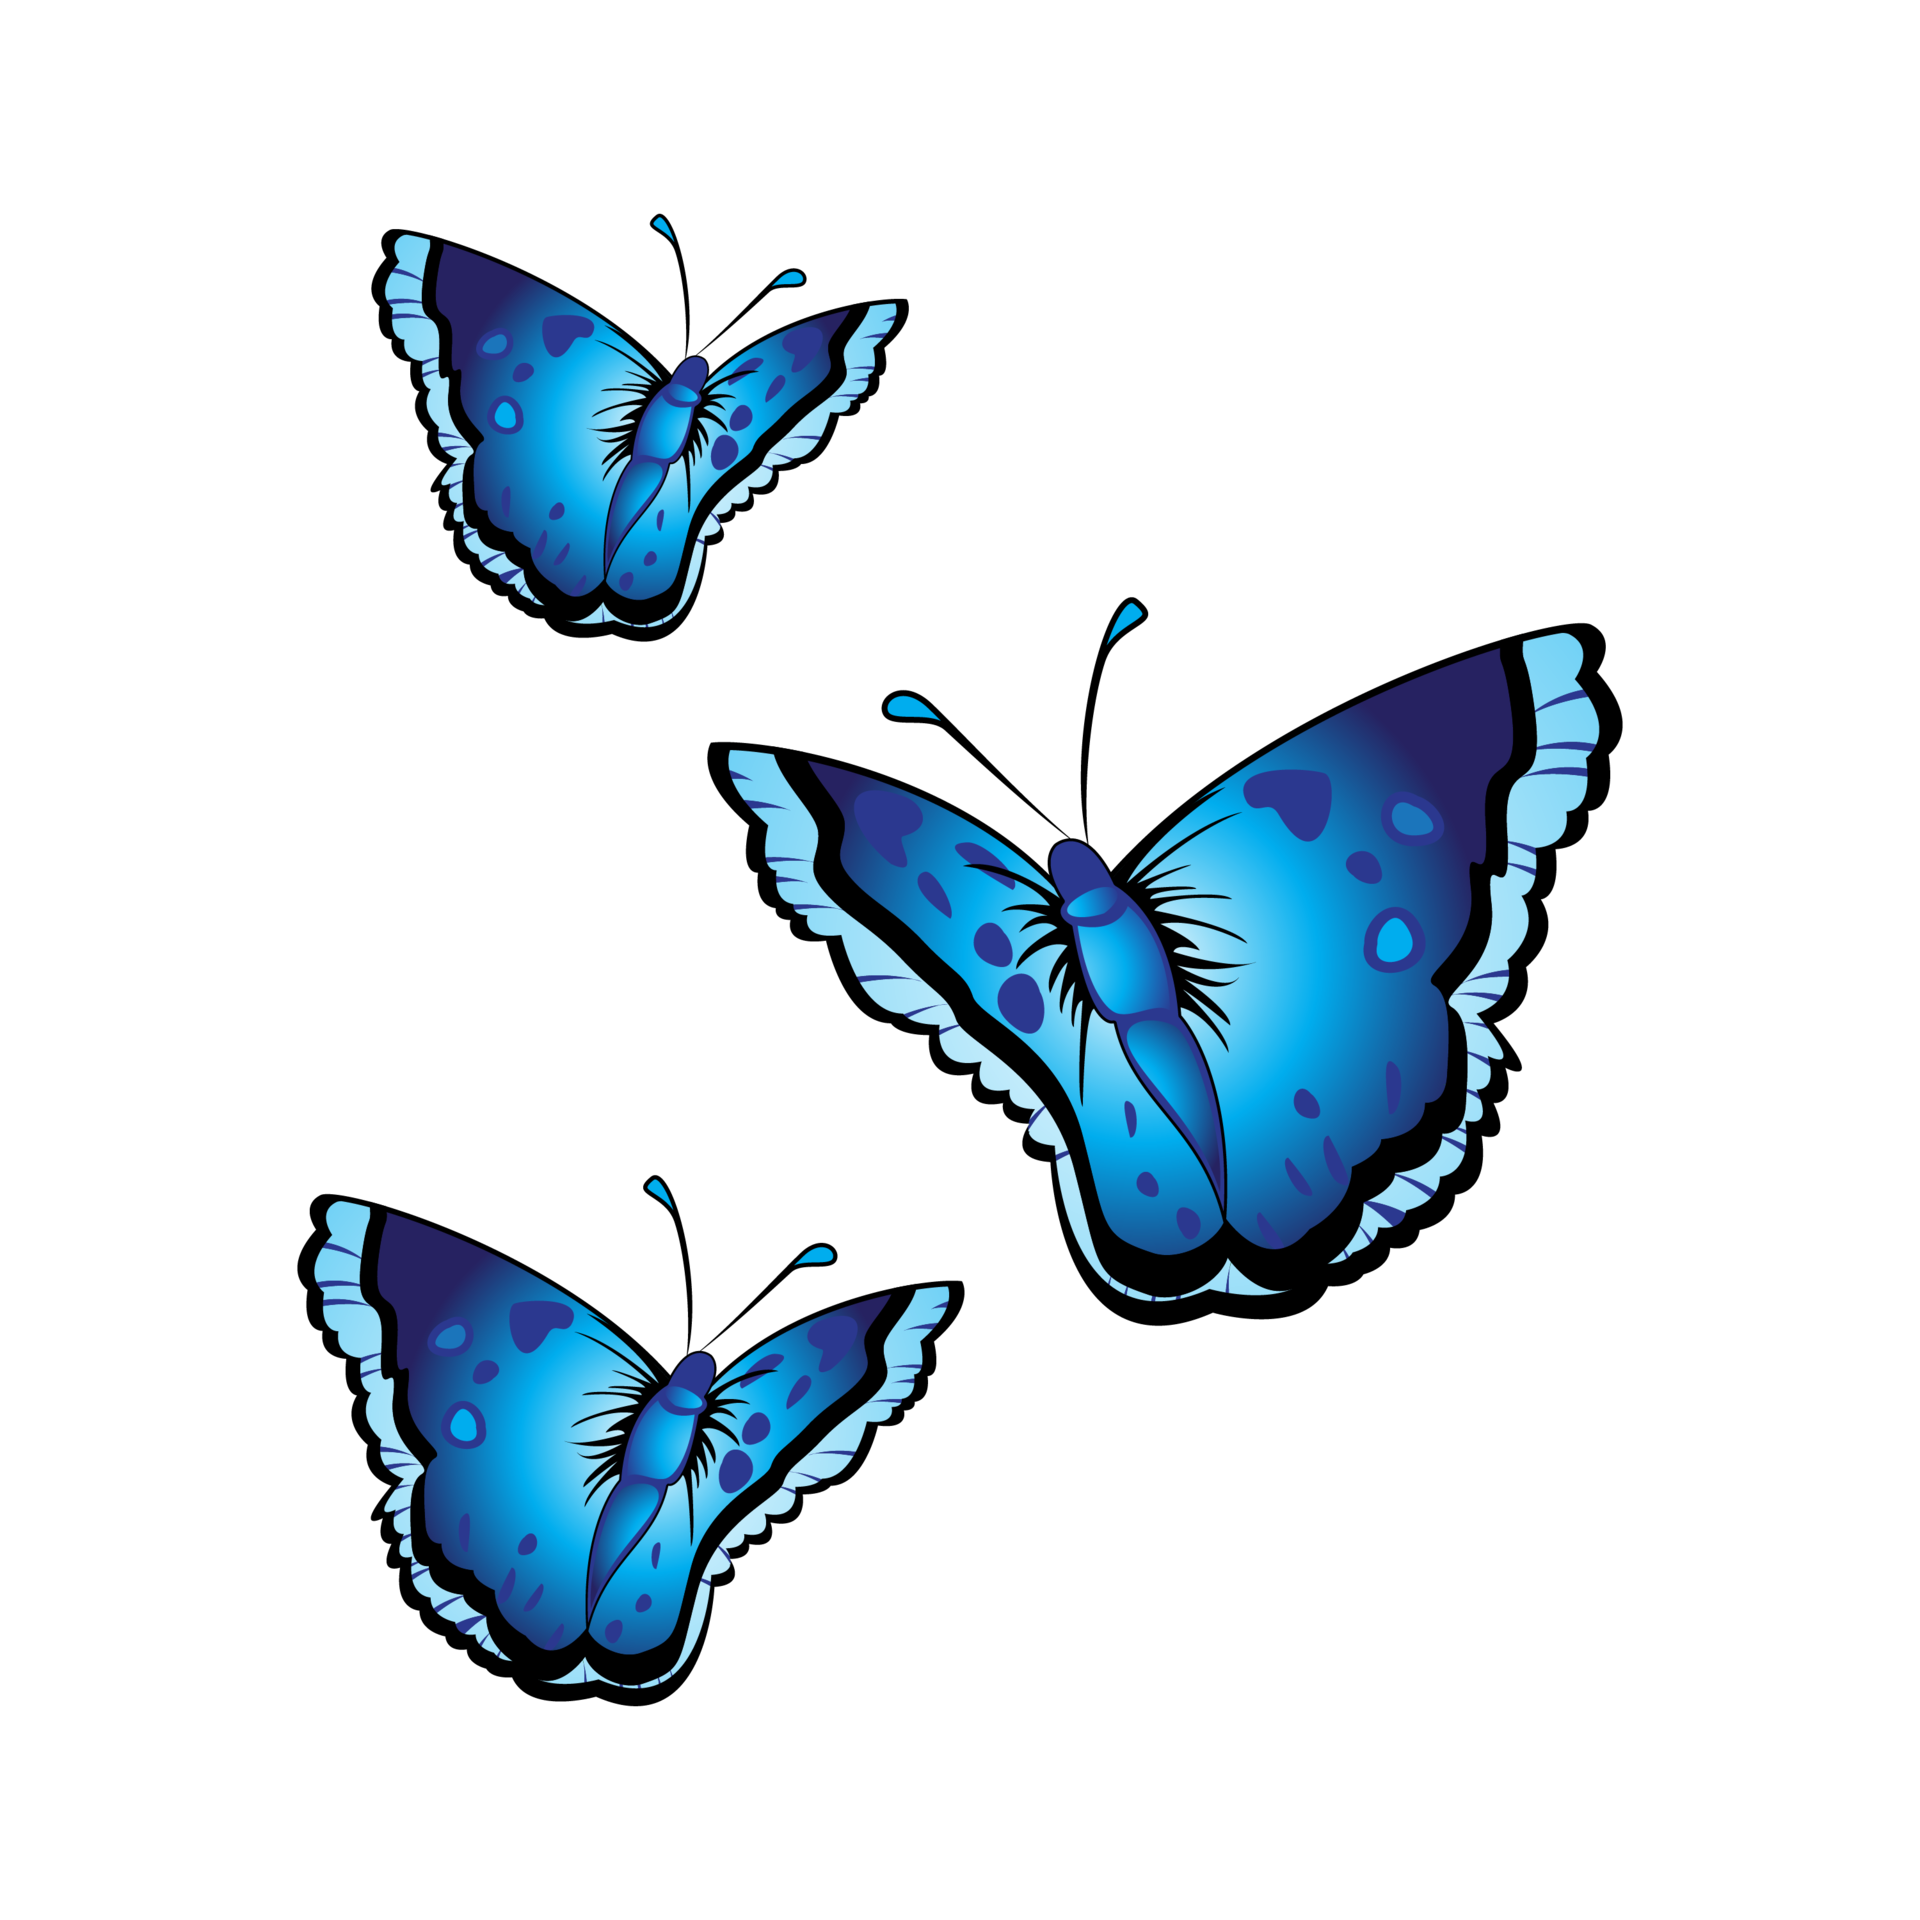 Màu xanh tươi tắn của bướm xanh sẽ làm cho bạn thư giãn và cảm thấy yên bình. Hãy ngắm nhìn vẻ đẹp đặc biệt của bướm xanh này trong hình ảnh và tận hưởng trải nghiệm tuyệt vời này!